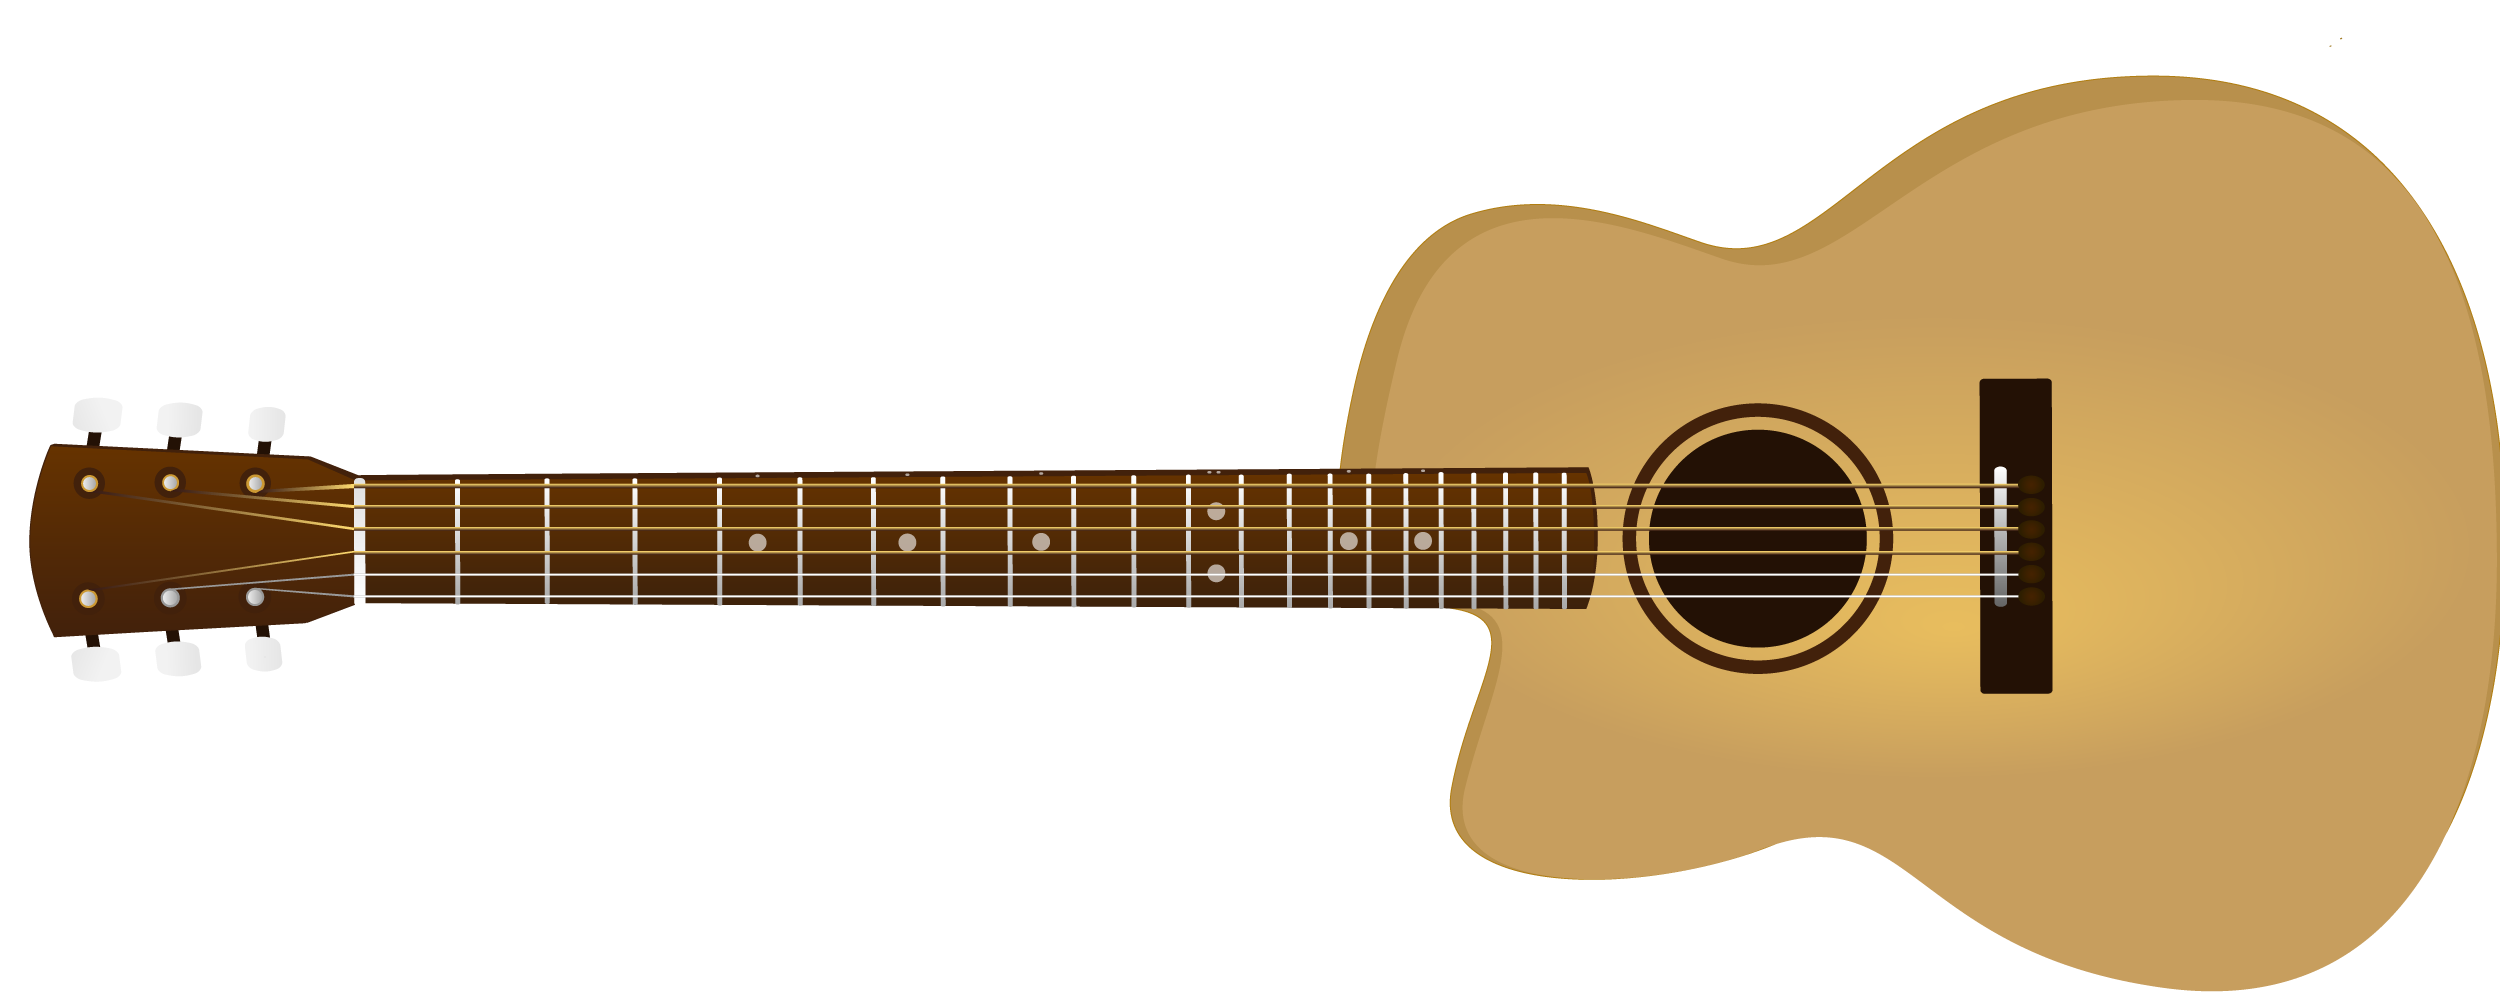 Acoustic Guitar Png Transparent Images #2381660 - Acoustic, Transparent background PNG HD thumbnail